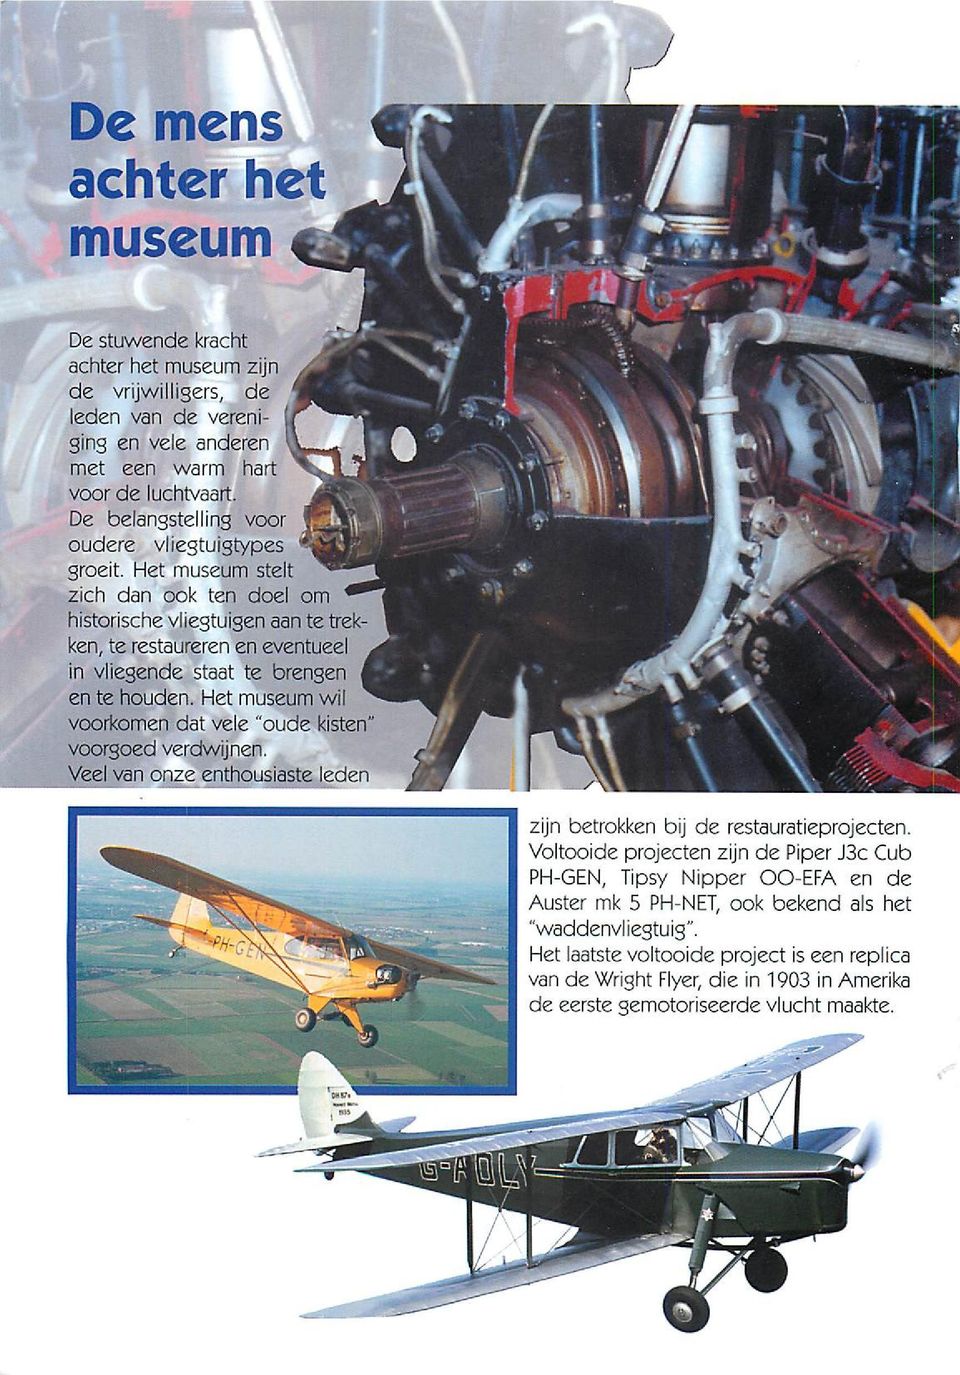 Het museum stelt zich dan ook ten doel om historische vliegtuigen aan te trekken, te restaureren en eventueel in vliegende staat te brengen en te houden.